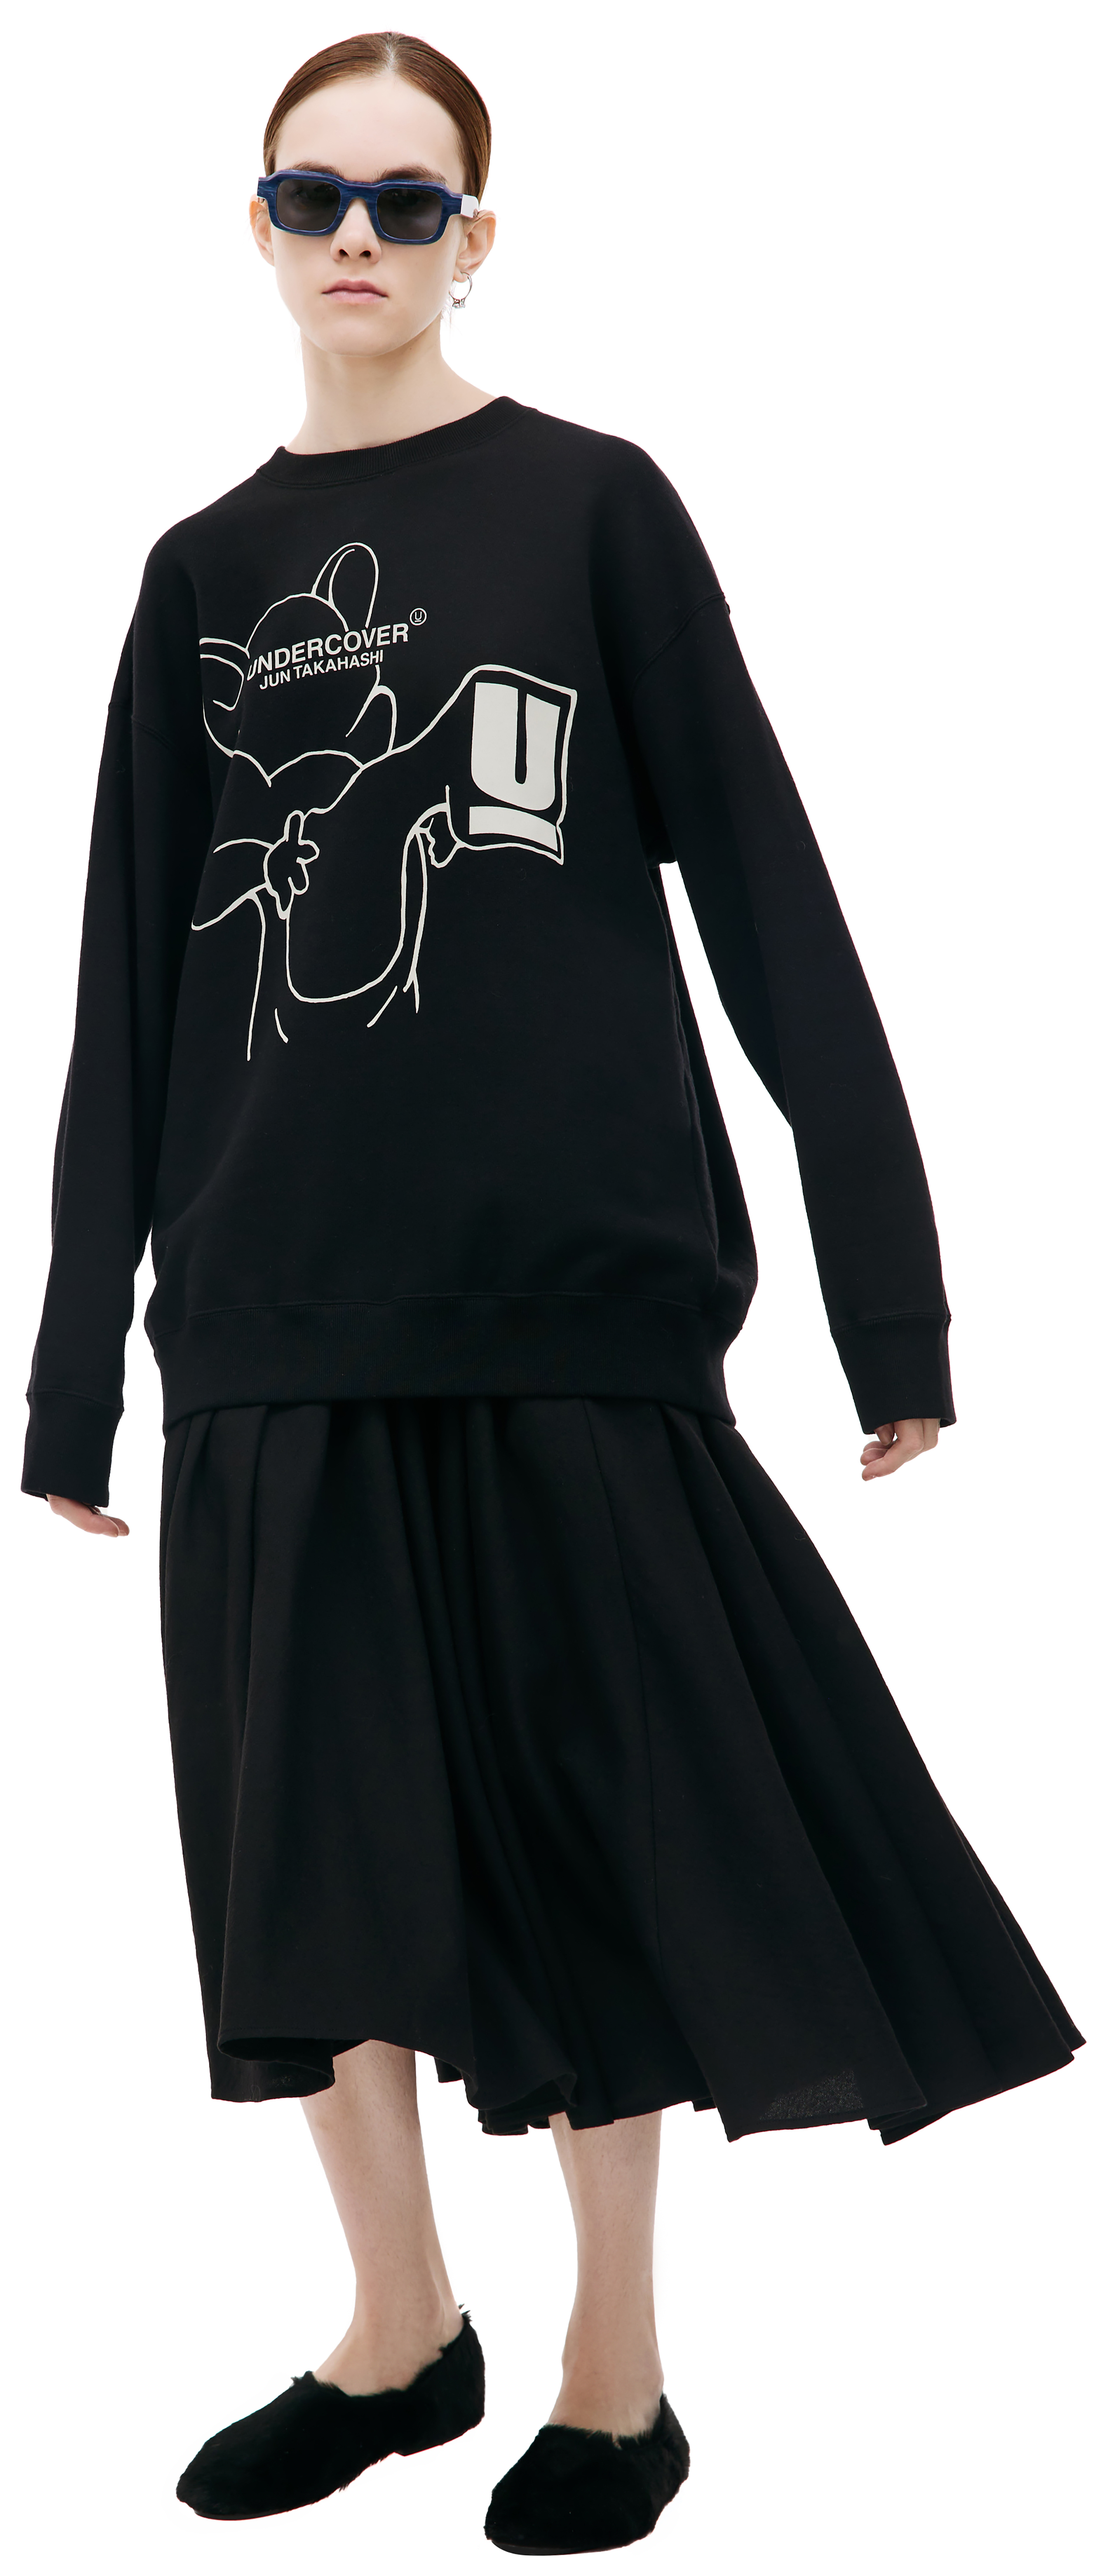 Buy Undercover women black graphic logo sweatshirt for $360 online